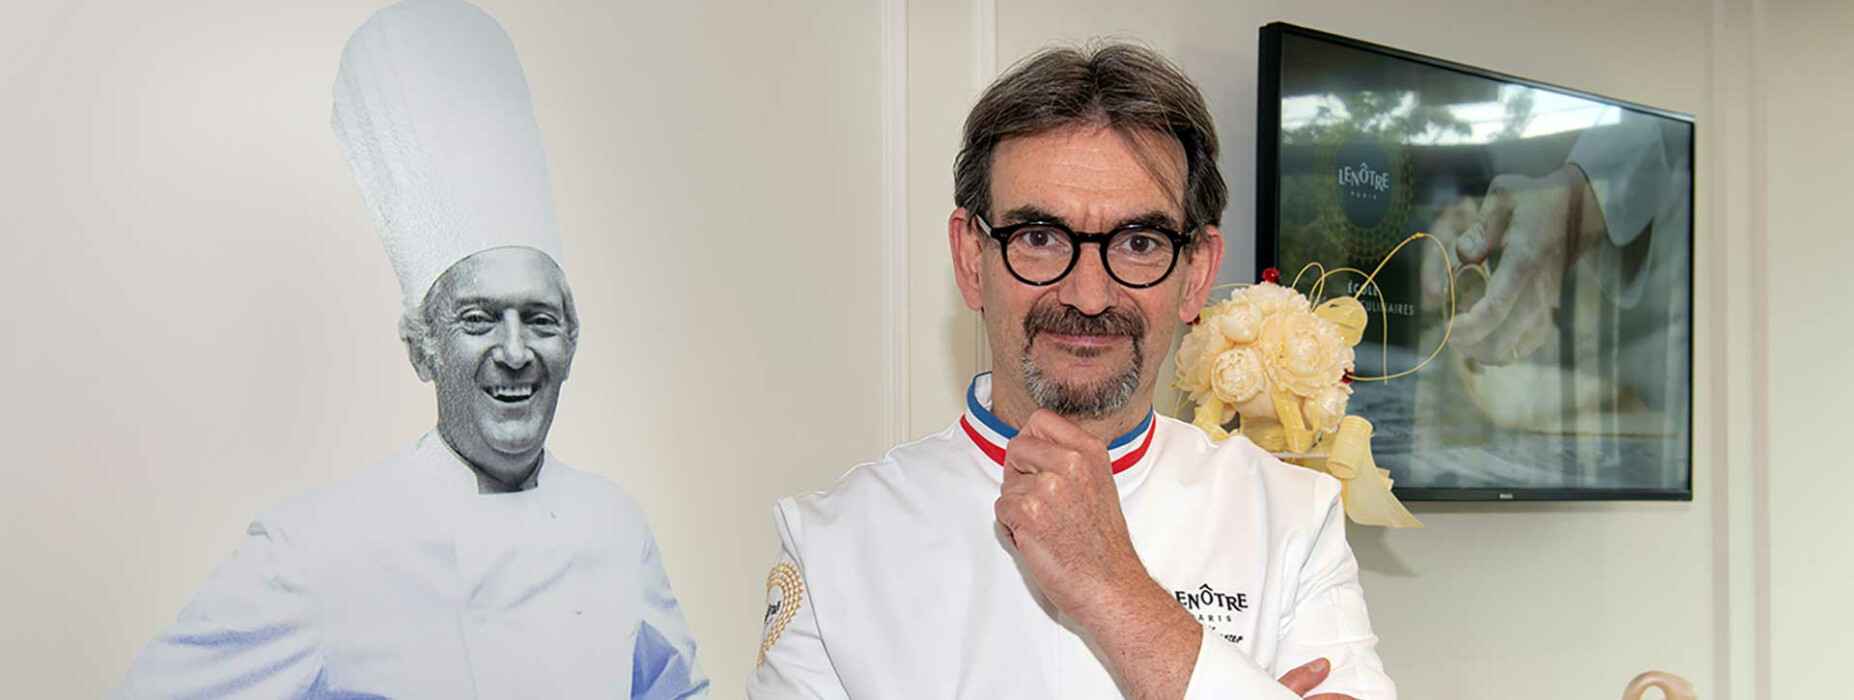 guy-krenzer-toque-chefs-2022-domitys-header-2.jpg